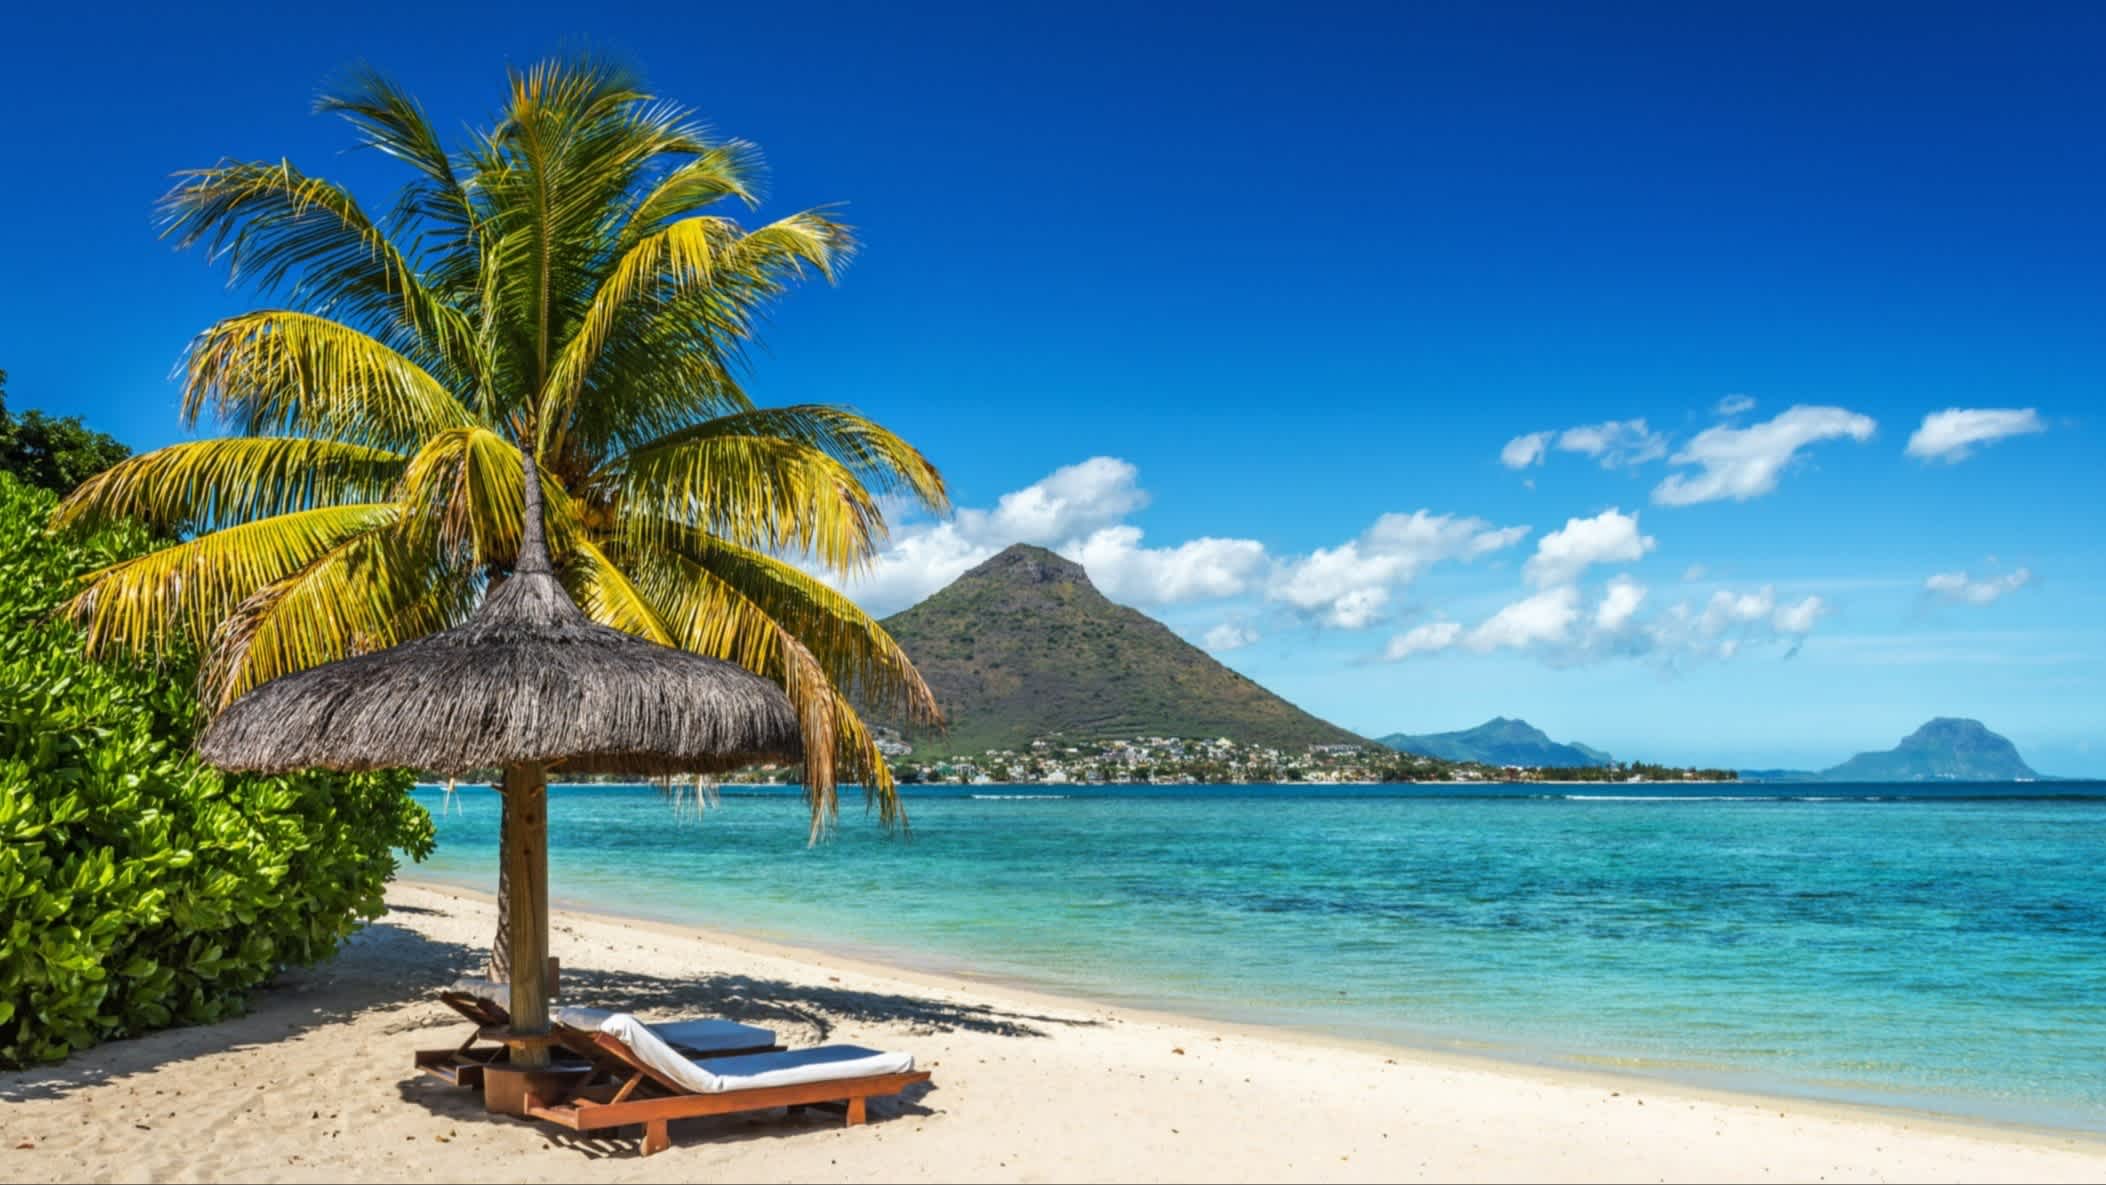 Liegen und Sonnenschirm am Strand von Blue Bay Beach, Südosten, Mauritius mit Palmen im Bild und bei herrlichem Sonnenschein.